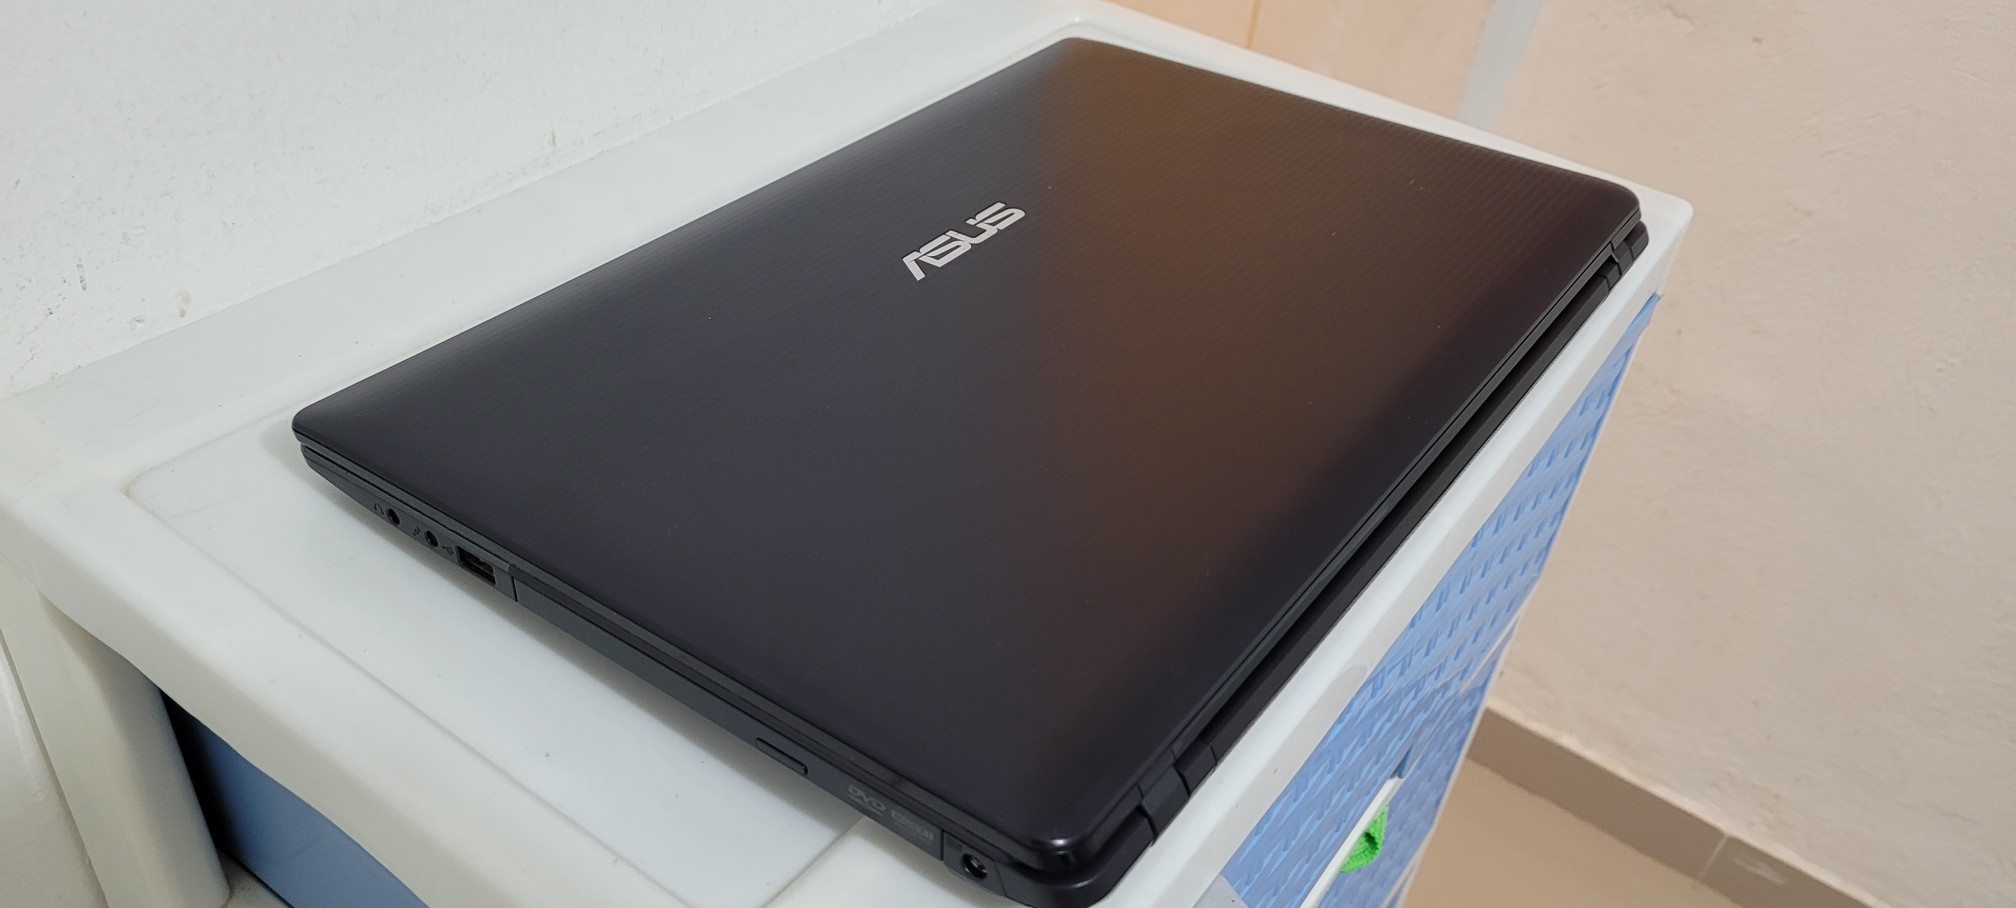 computadoras y laptops - laptop Asus 17 Pulg A8 Ram 8gb Disco Solido Aty Radeon 4gb 1